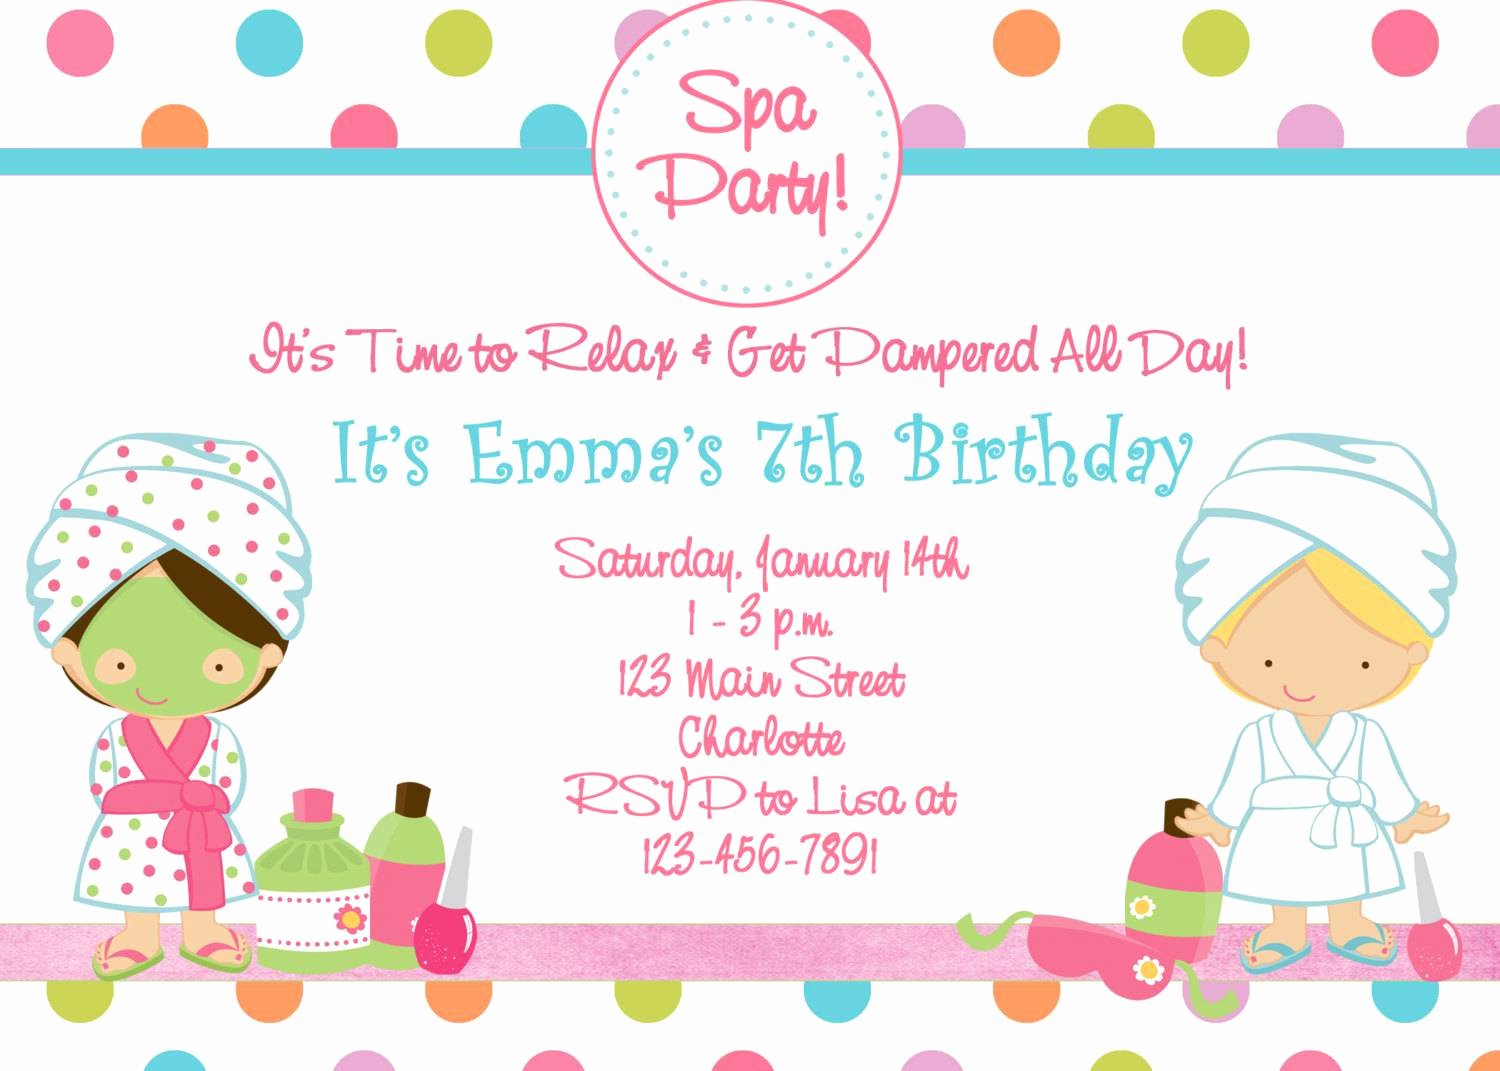 Spa Party Invite Template Unique Spa Birthday Party Invitations